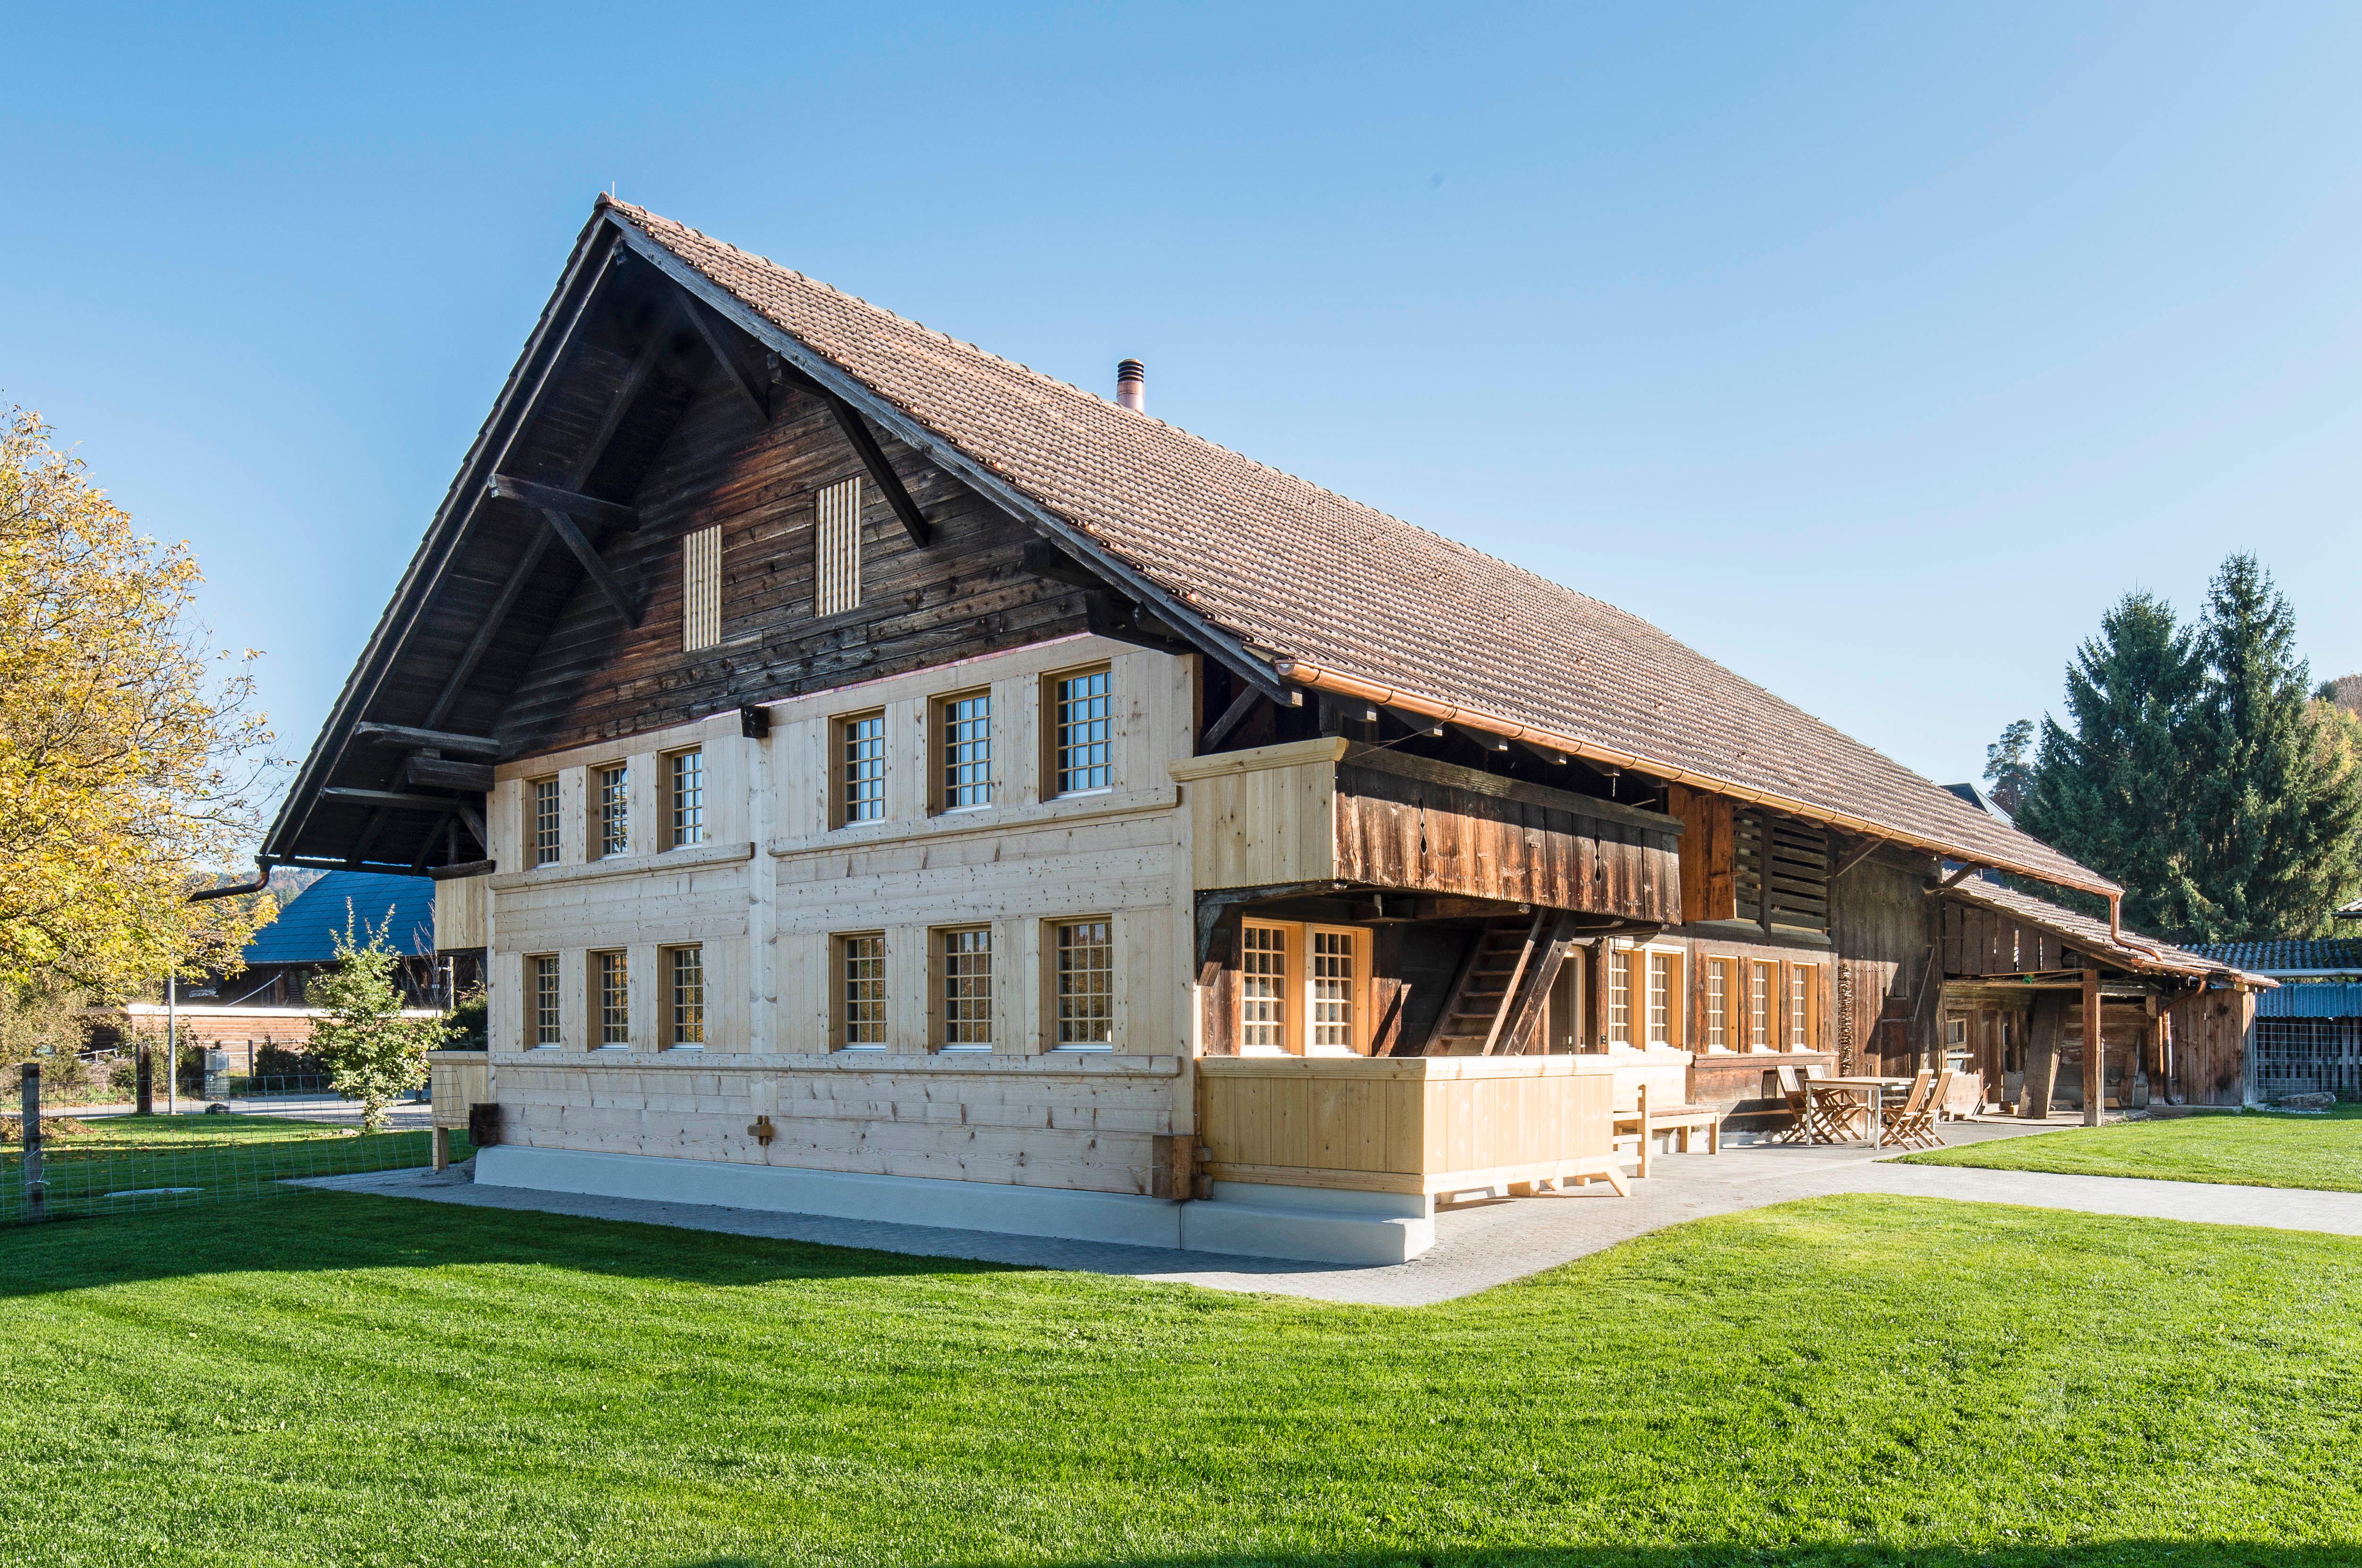 Architektur-Reportage Oppligen: imposanter Anblick des renovierten Bauernhauses